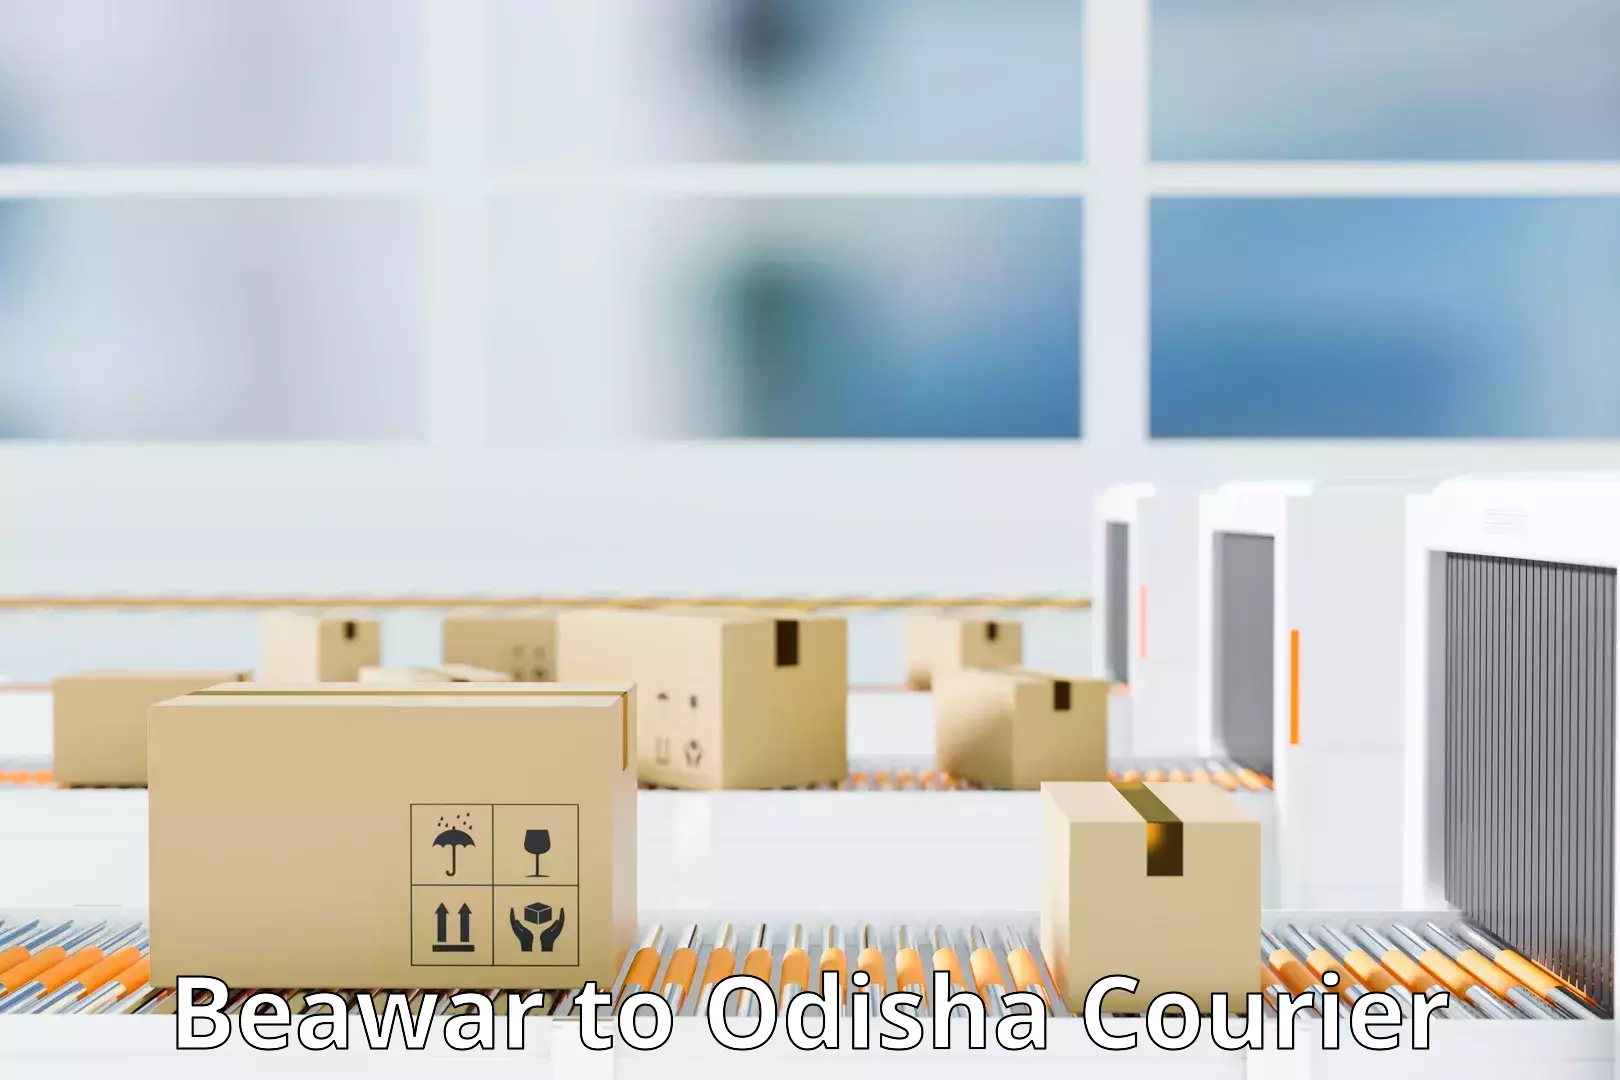 Customer-centric shipping Beawar to Odisha